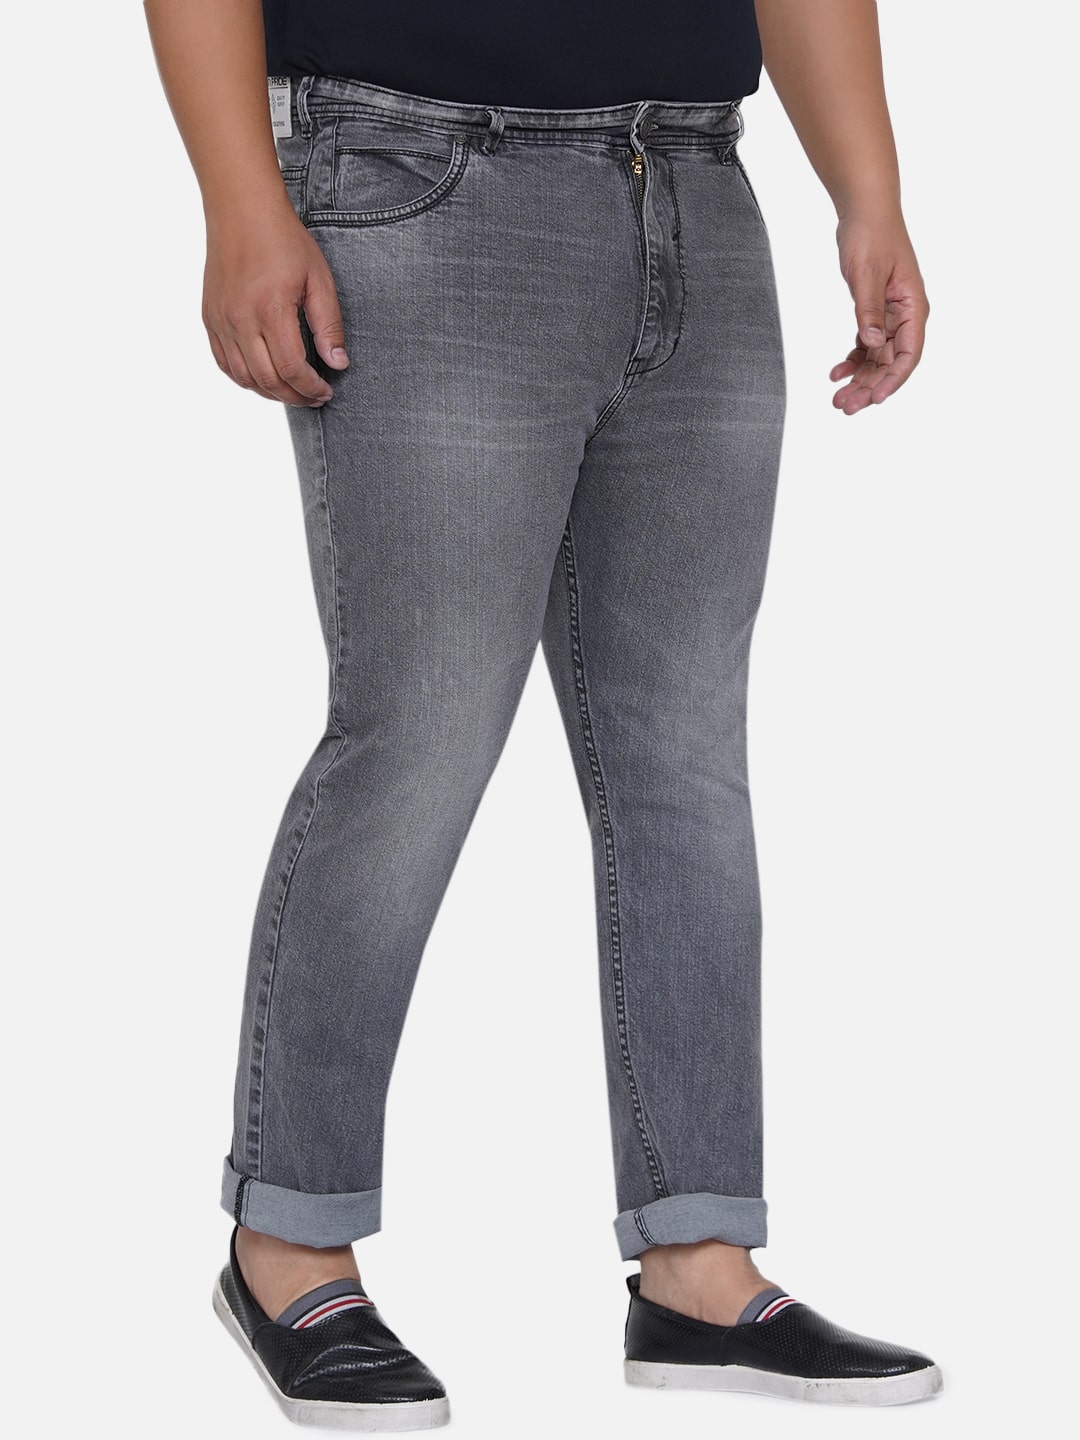 bottomwear/jeans/EJPJ25011/ejpj25011-6.jpg